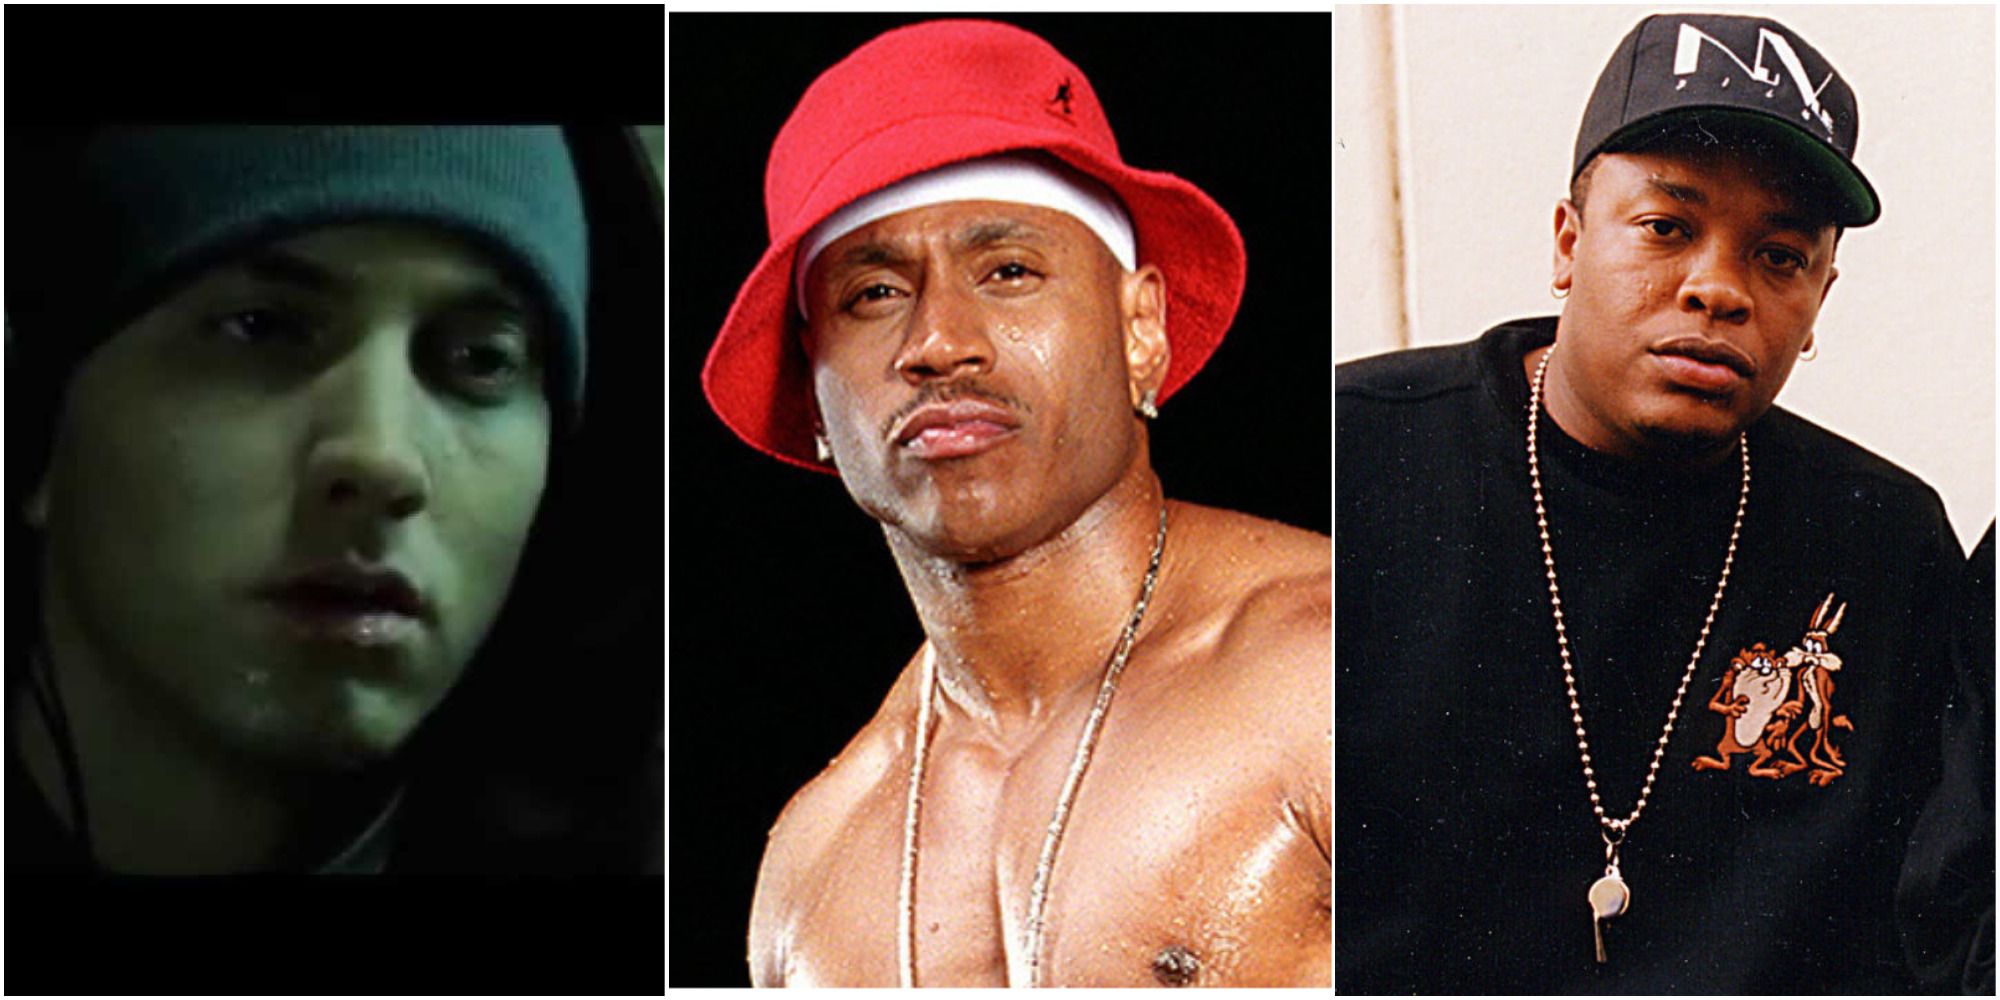 10 Best Movie Rap Songs Ranked By Top YouTube Streams